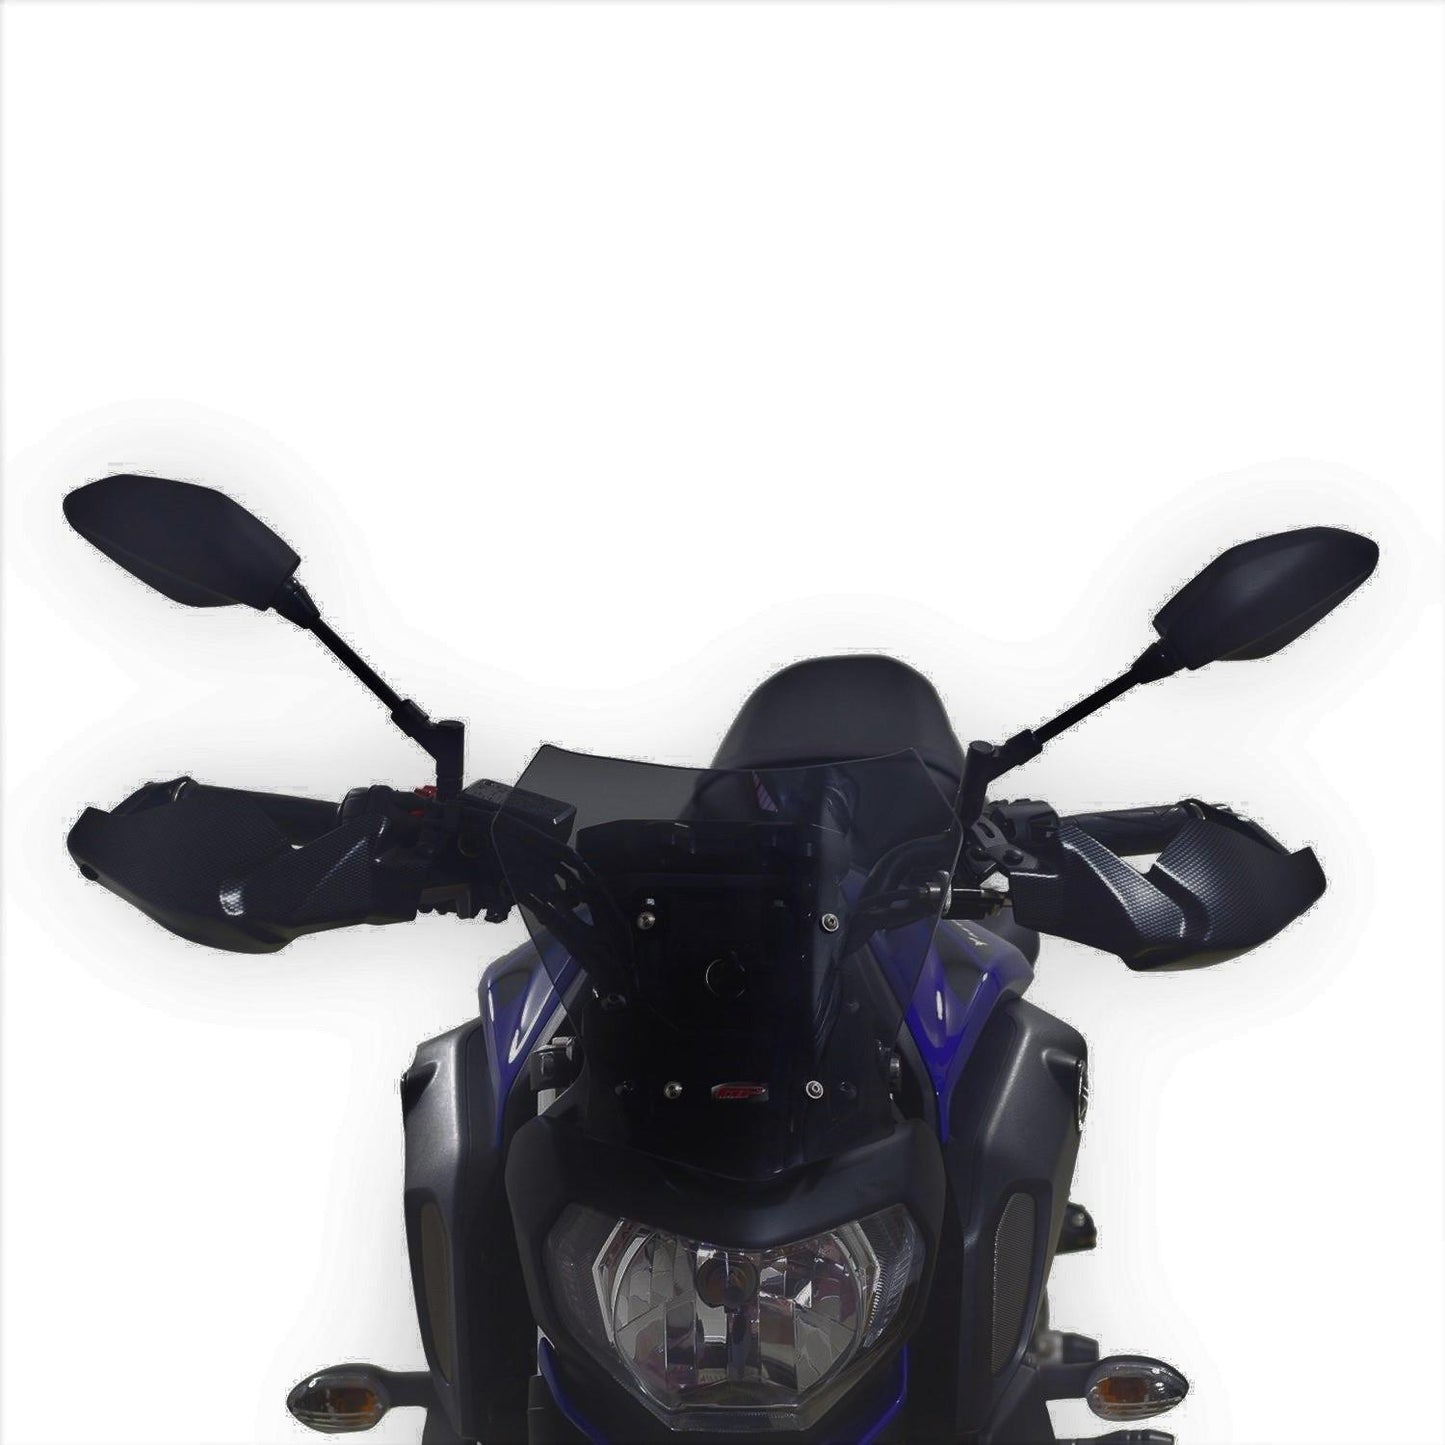 Yamaha MT07 windscreen dark smoke 30 CM 2018-2020